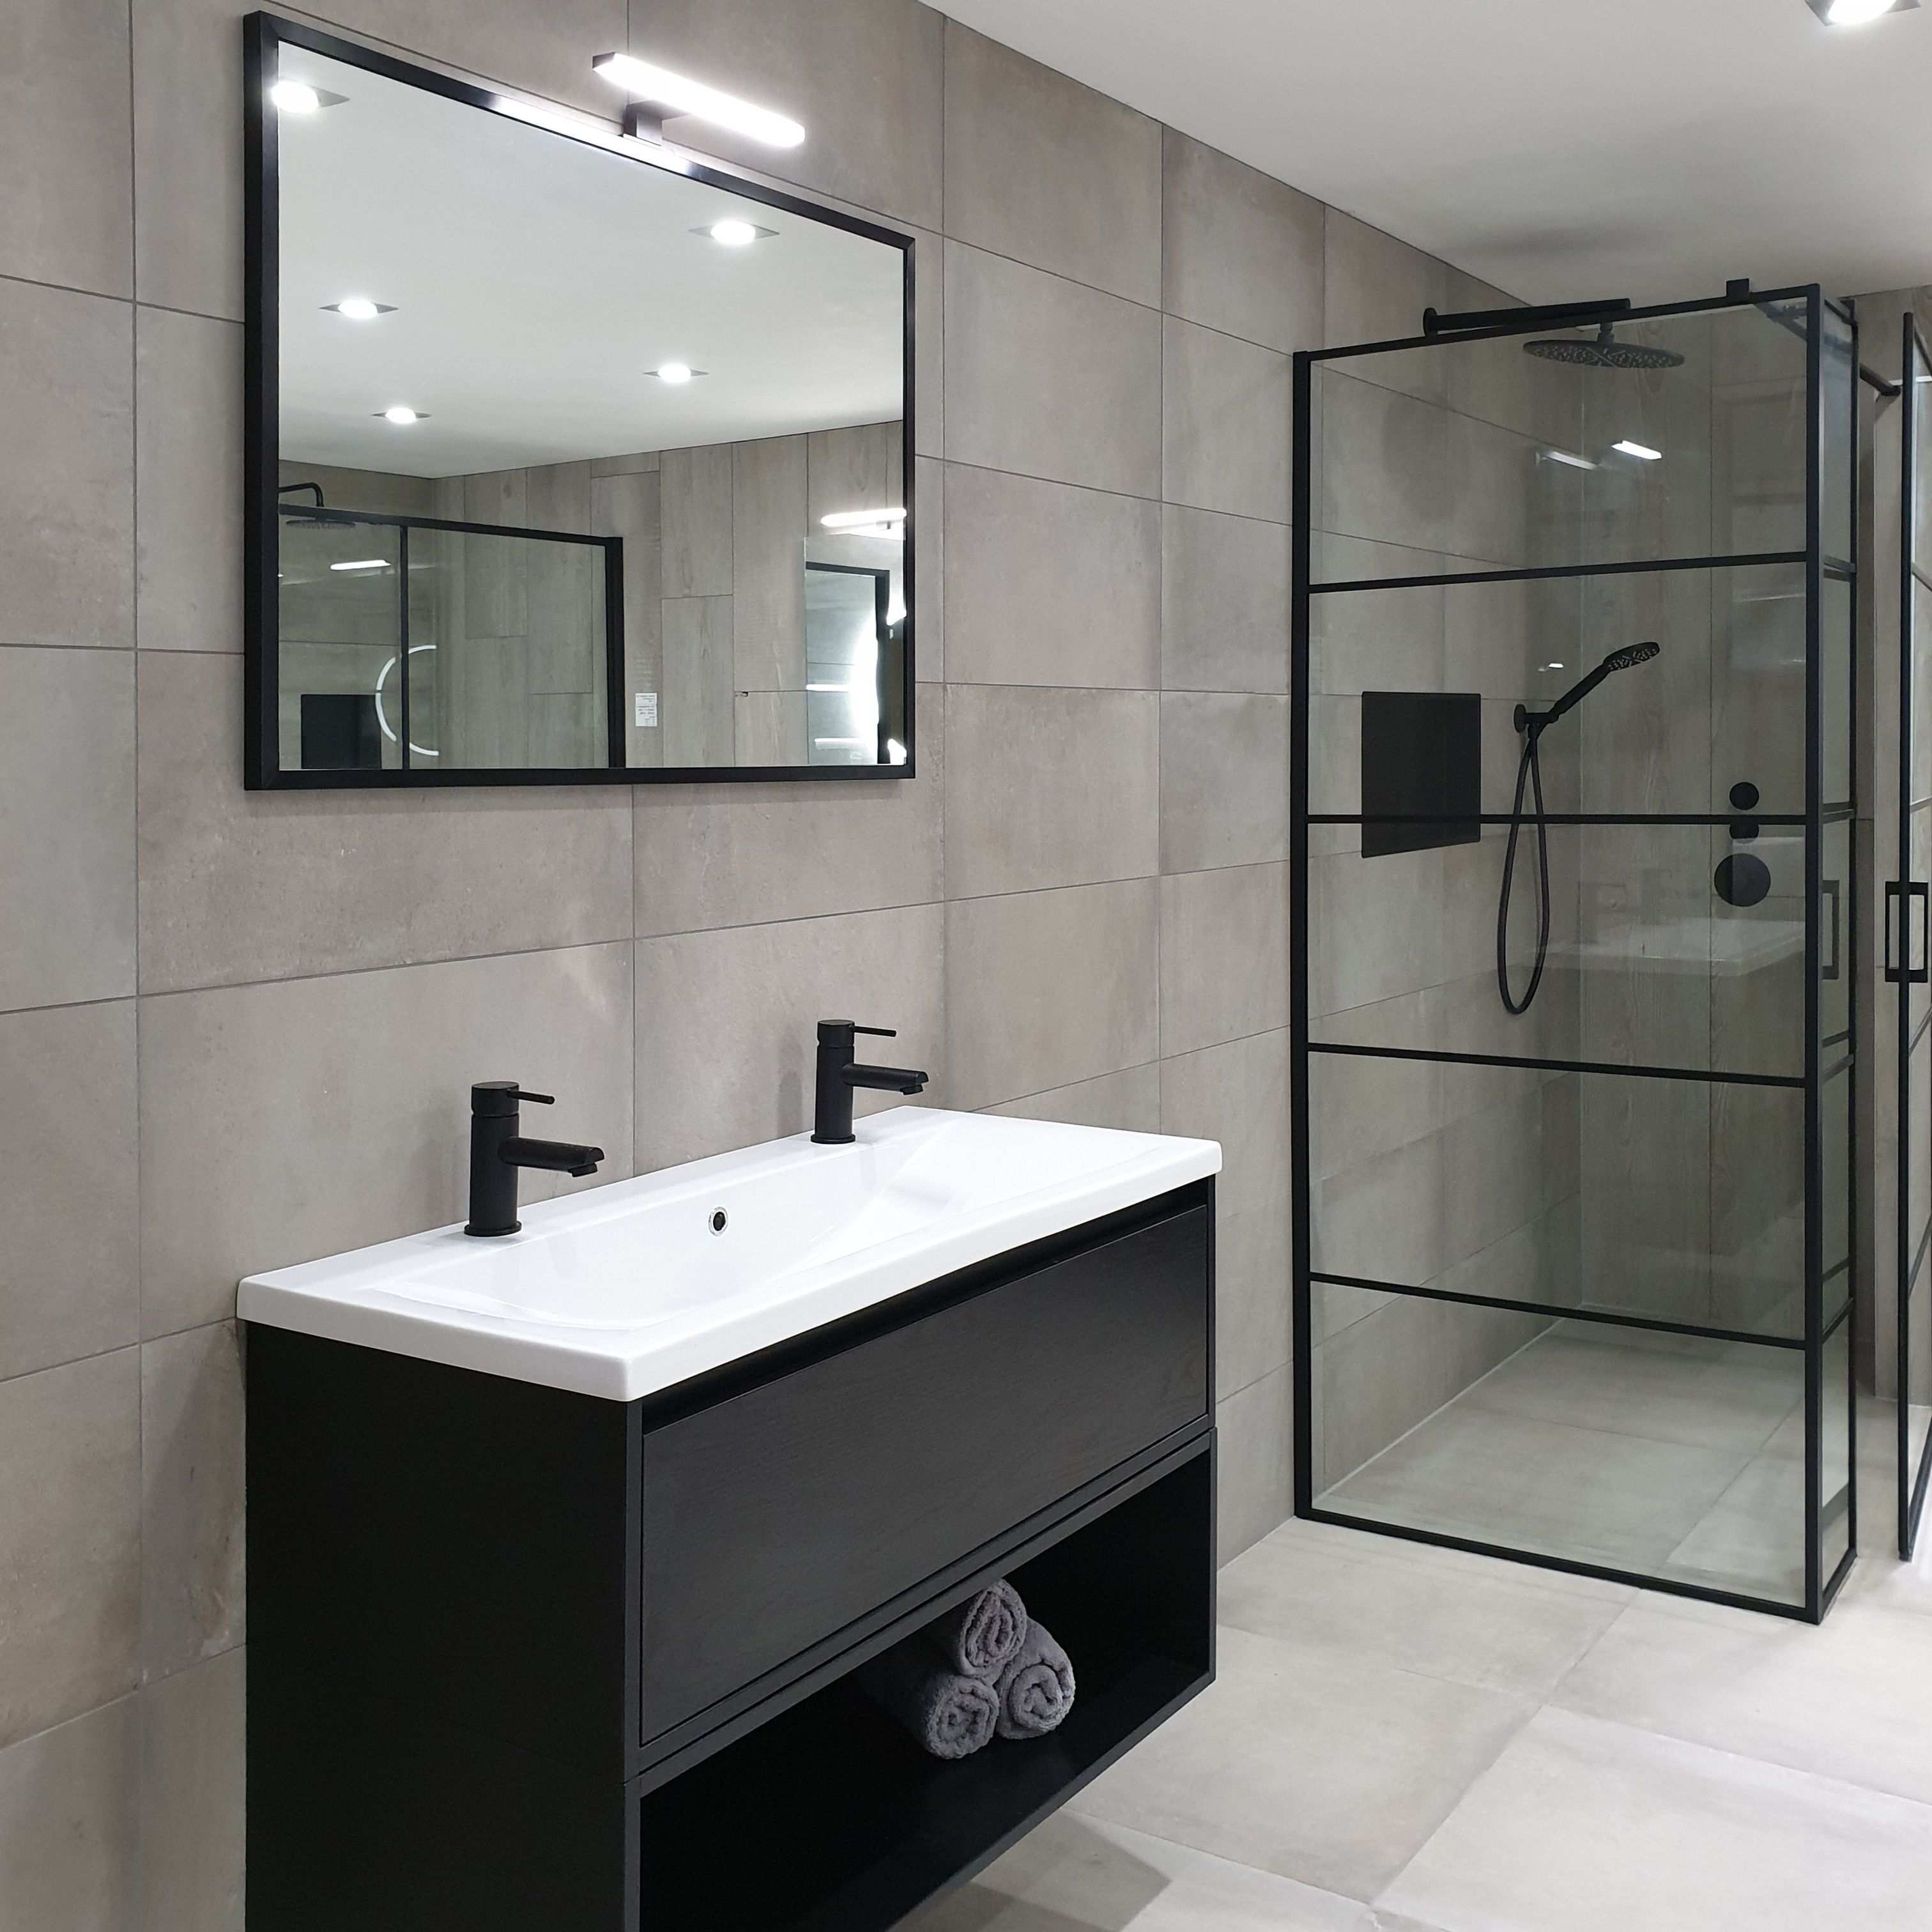 Ichoice Zwart Industrieel Badkamerinspiratie Bathroom Design